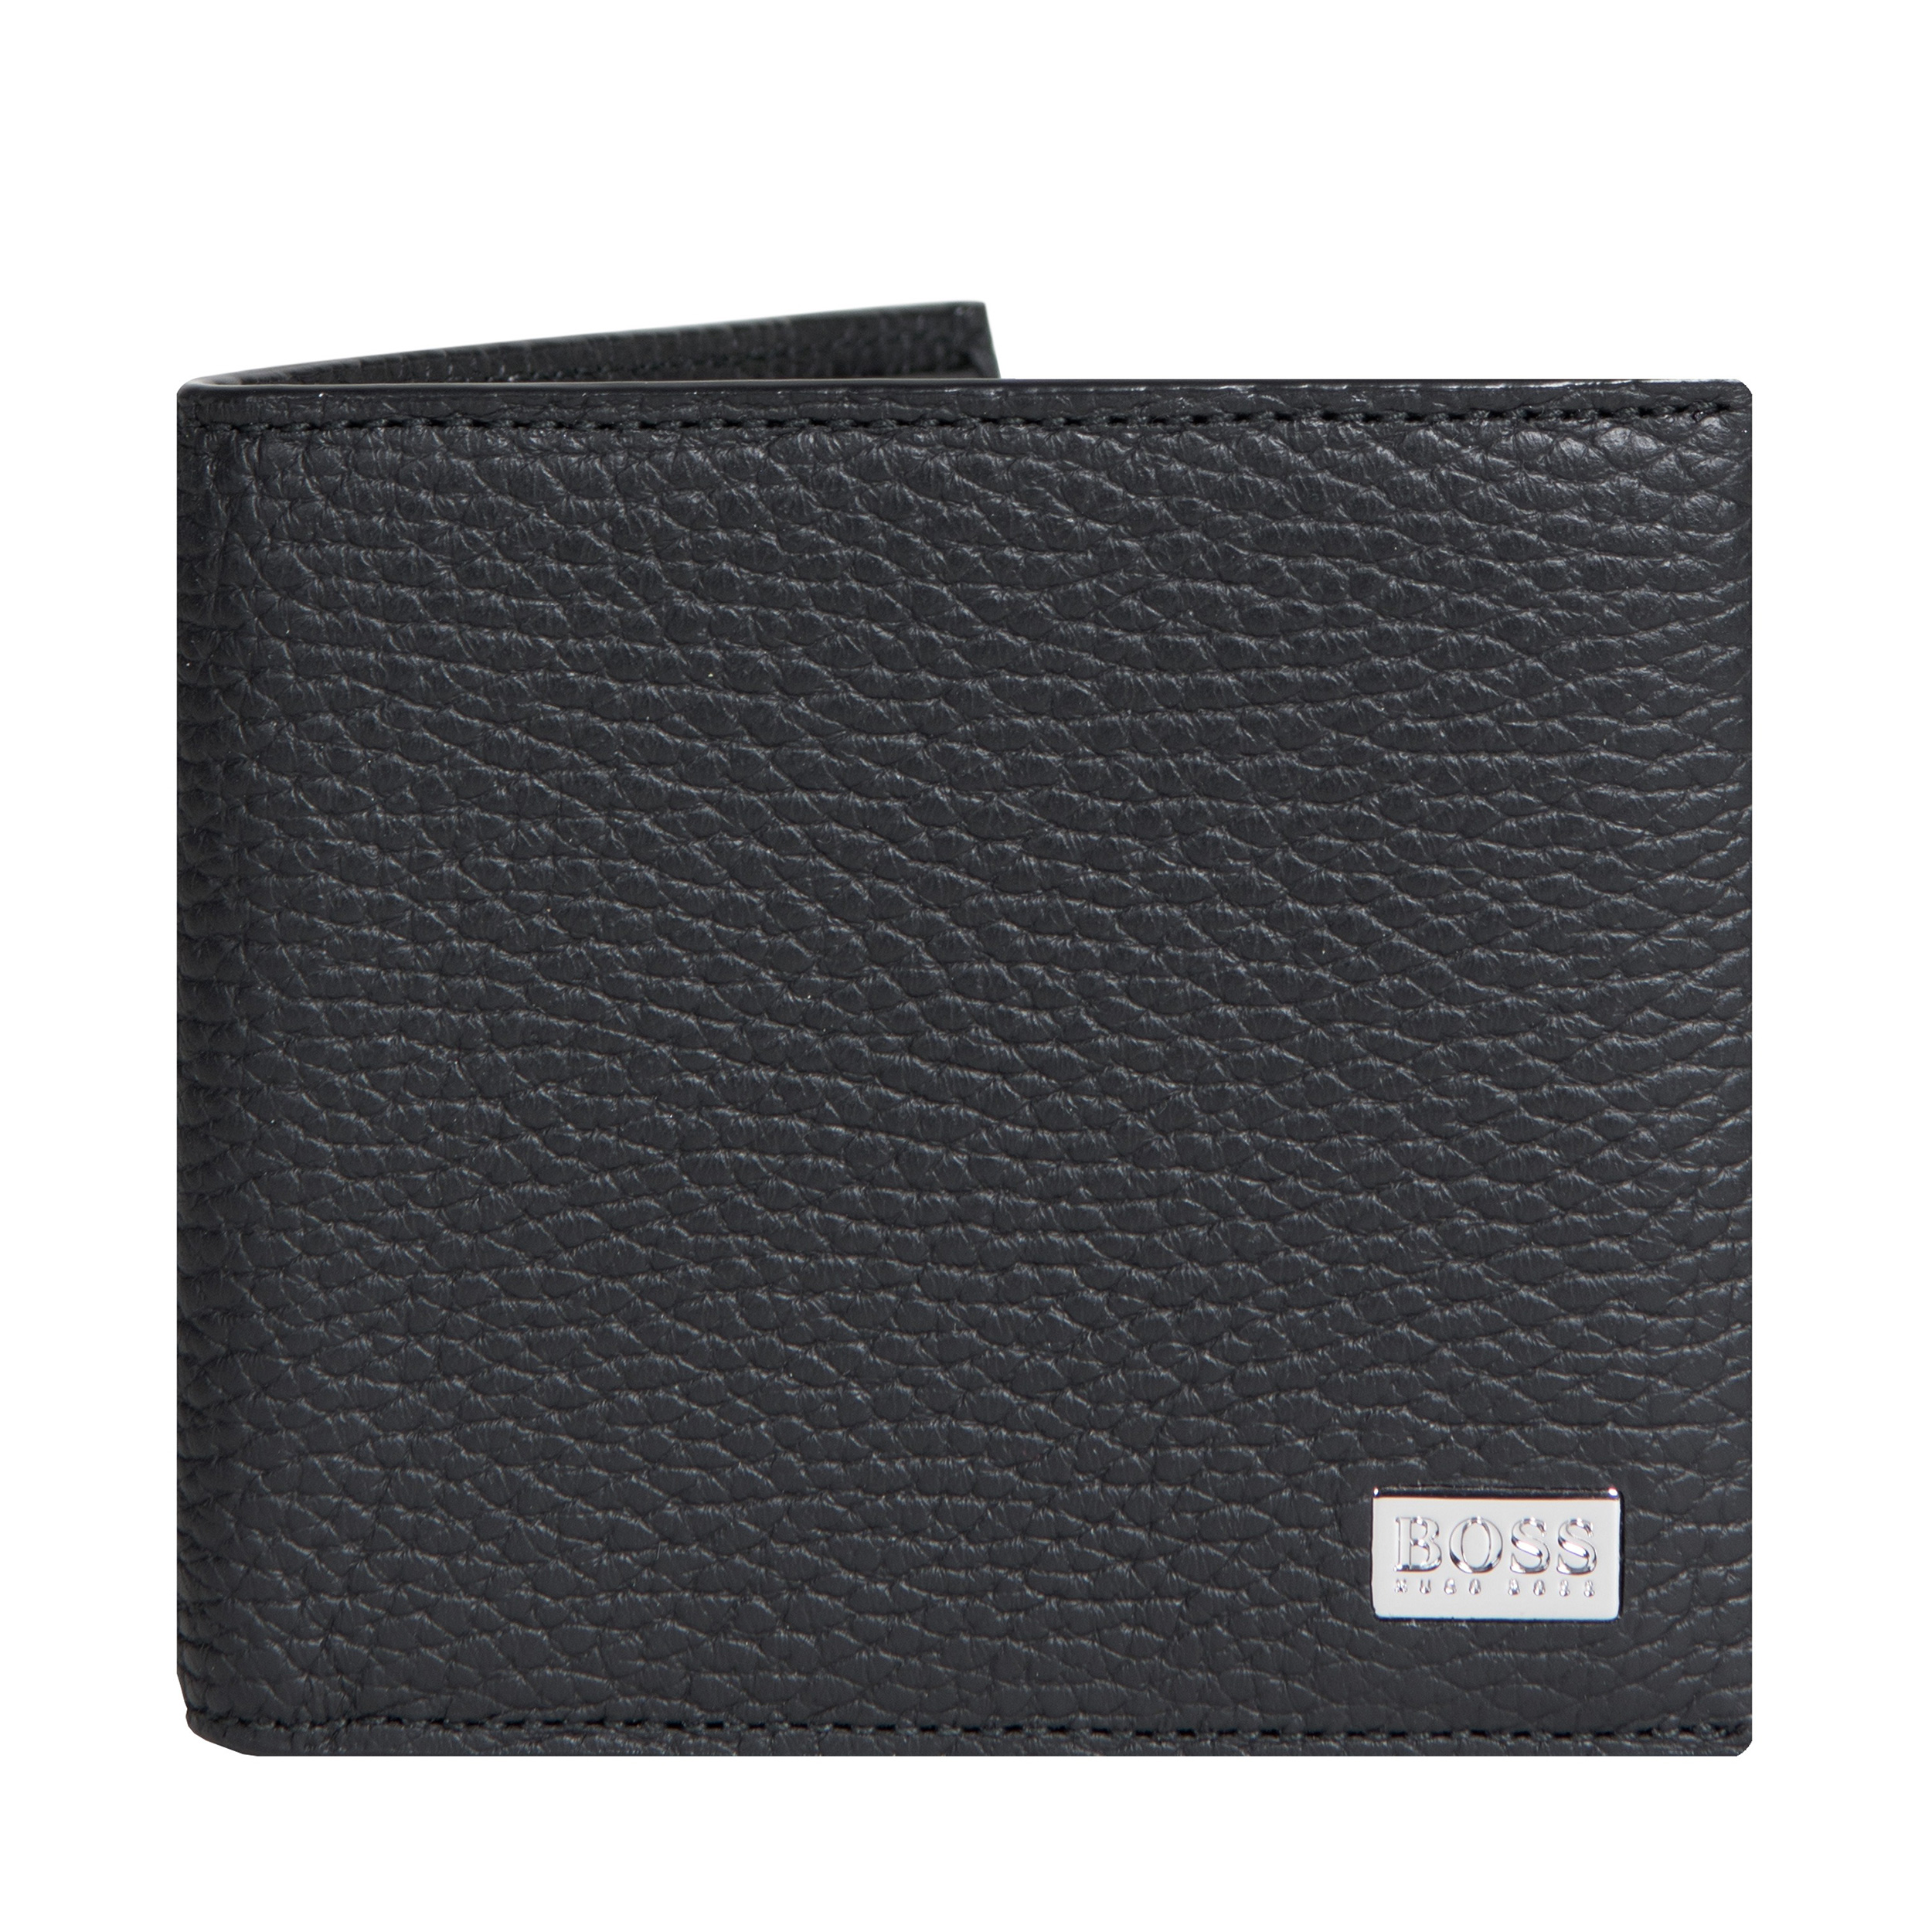 HUGO BOSS 'Crosstown_8cc' 8-Card Grained Leather Billfold Wallet Black